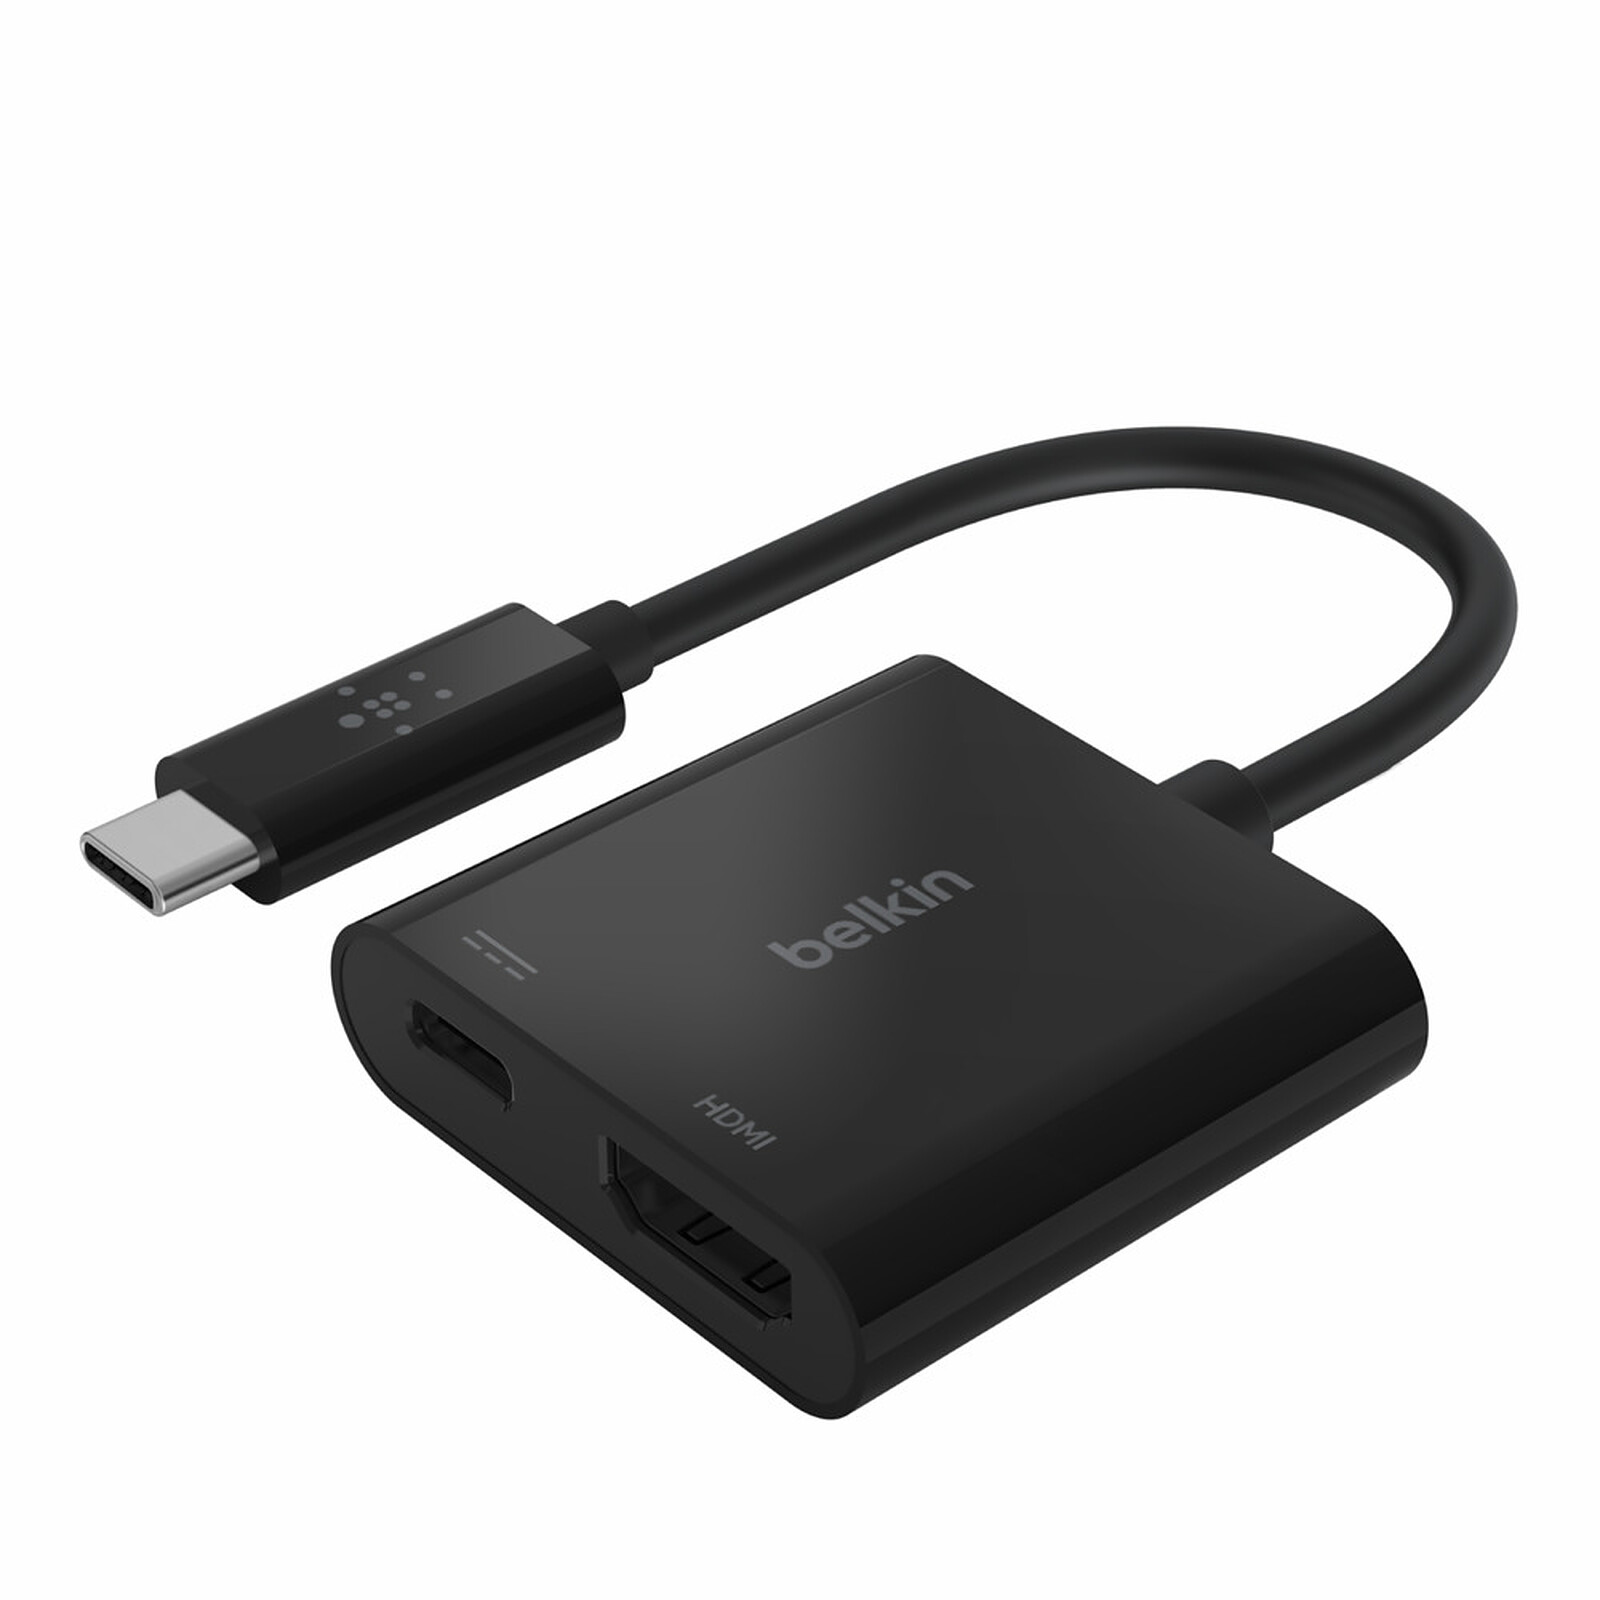 50 cm HDMI femelle + HDMI mâle vers USB 2.0 câble adaptateur de connecteur  mâle